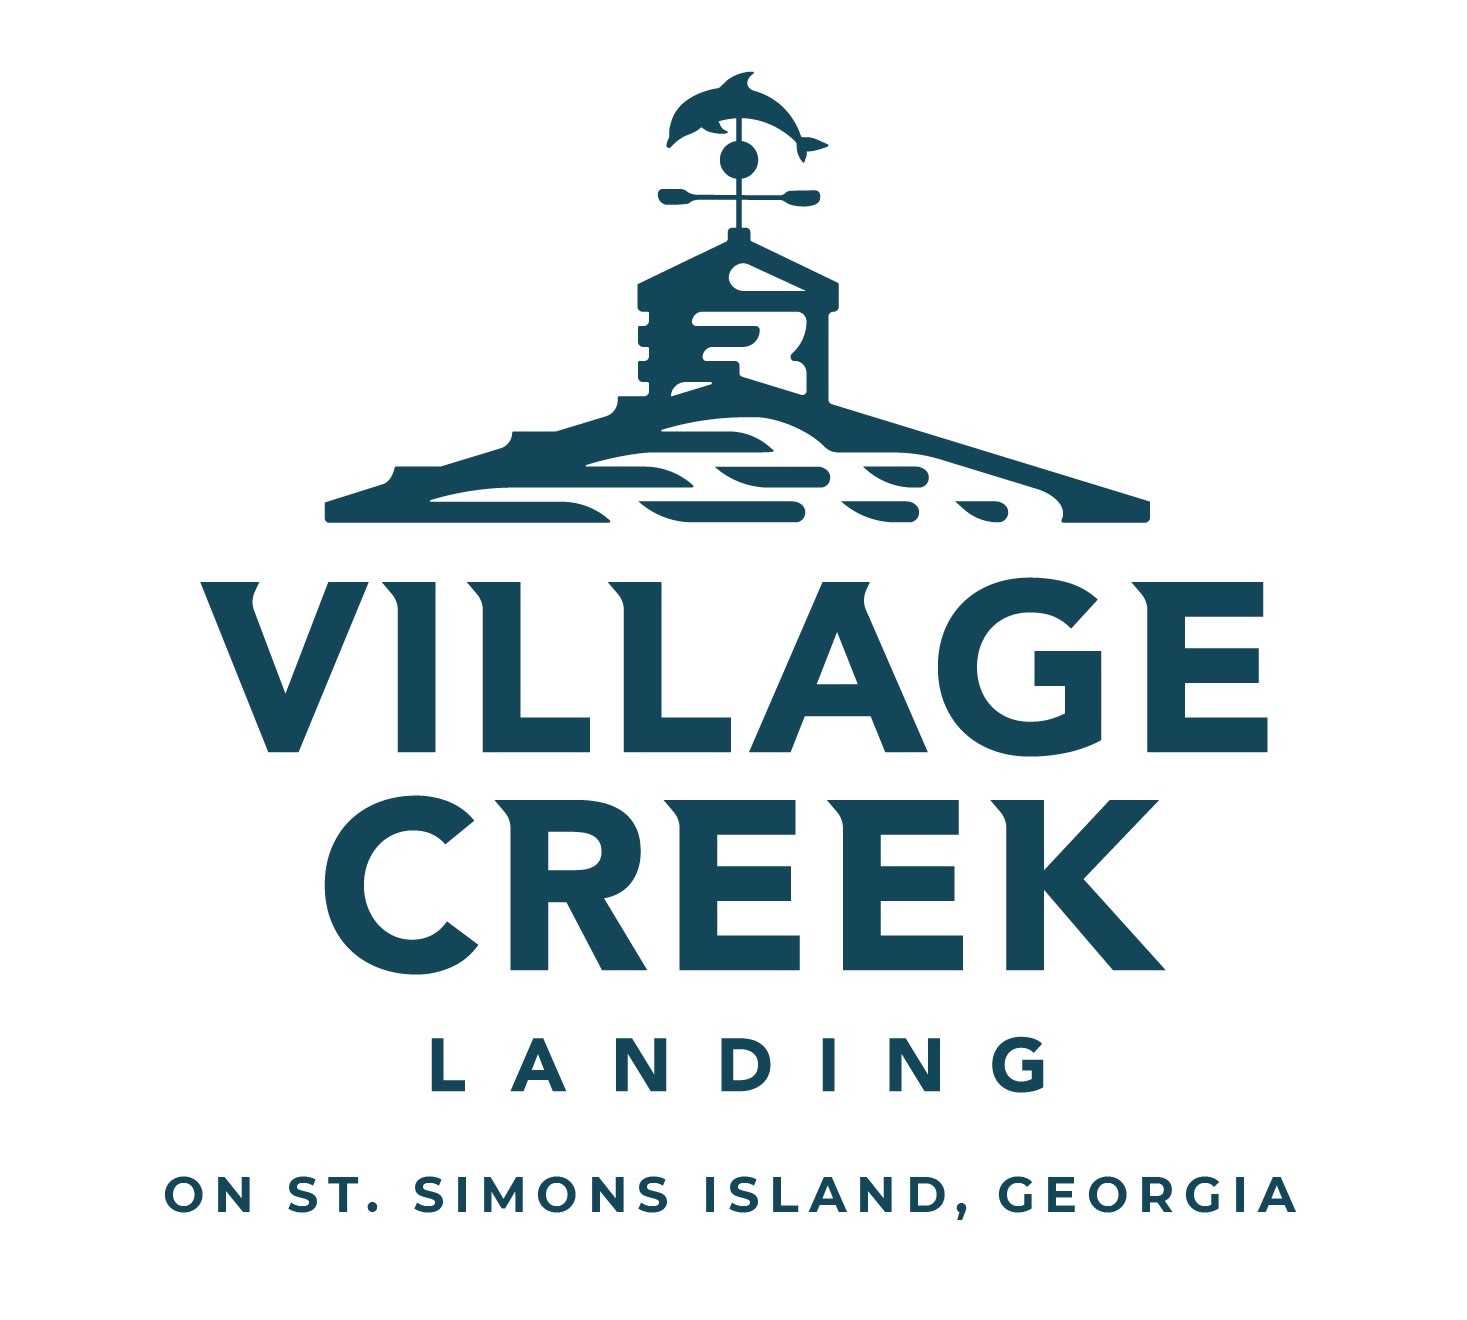 Village Creek Landing